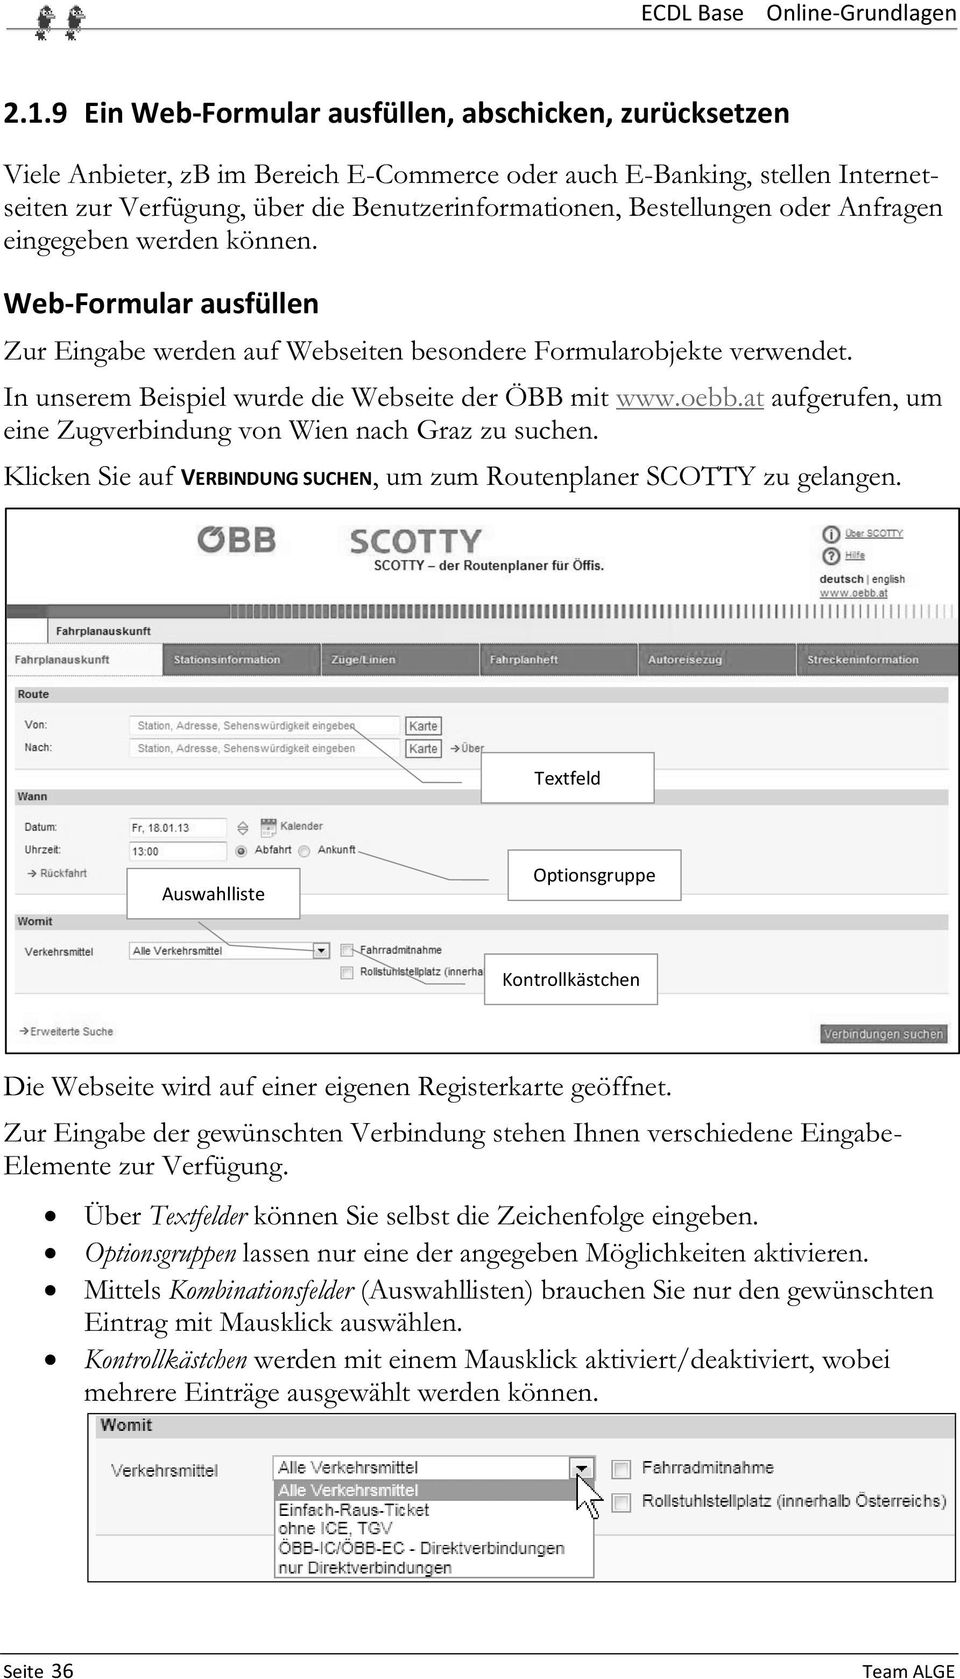 In unserem Beispiel wurde die Webseite der ÖBB mit www.oebb.at aufgerufen, um eine Zugverbindung von Wien nach Graz zu suchen.